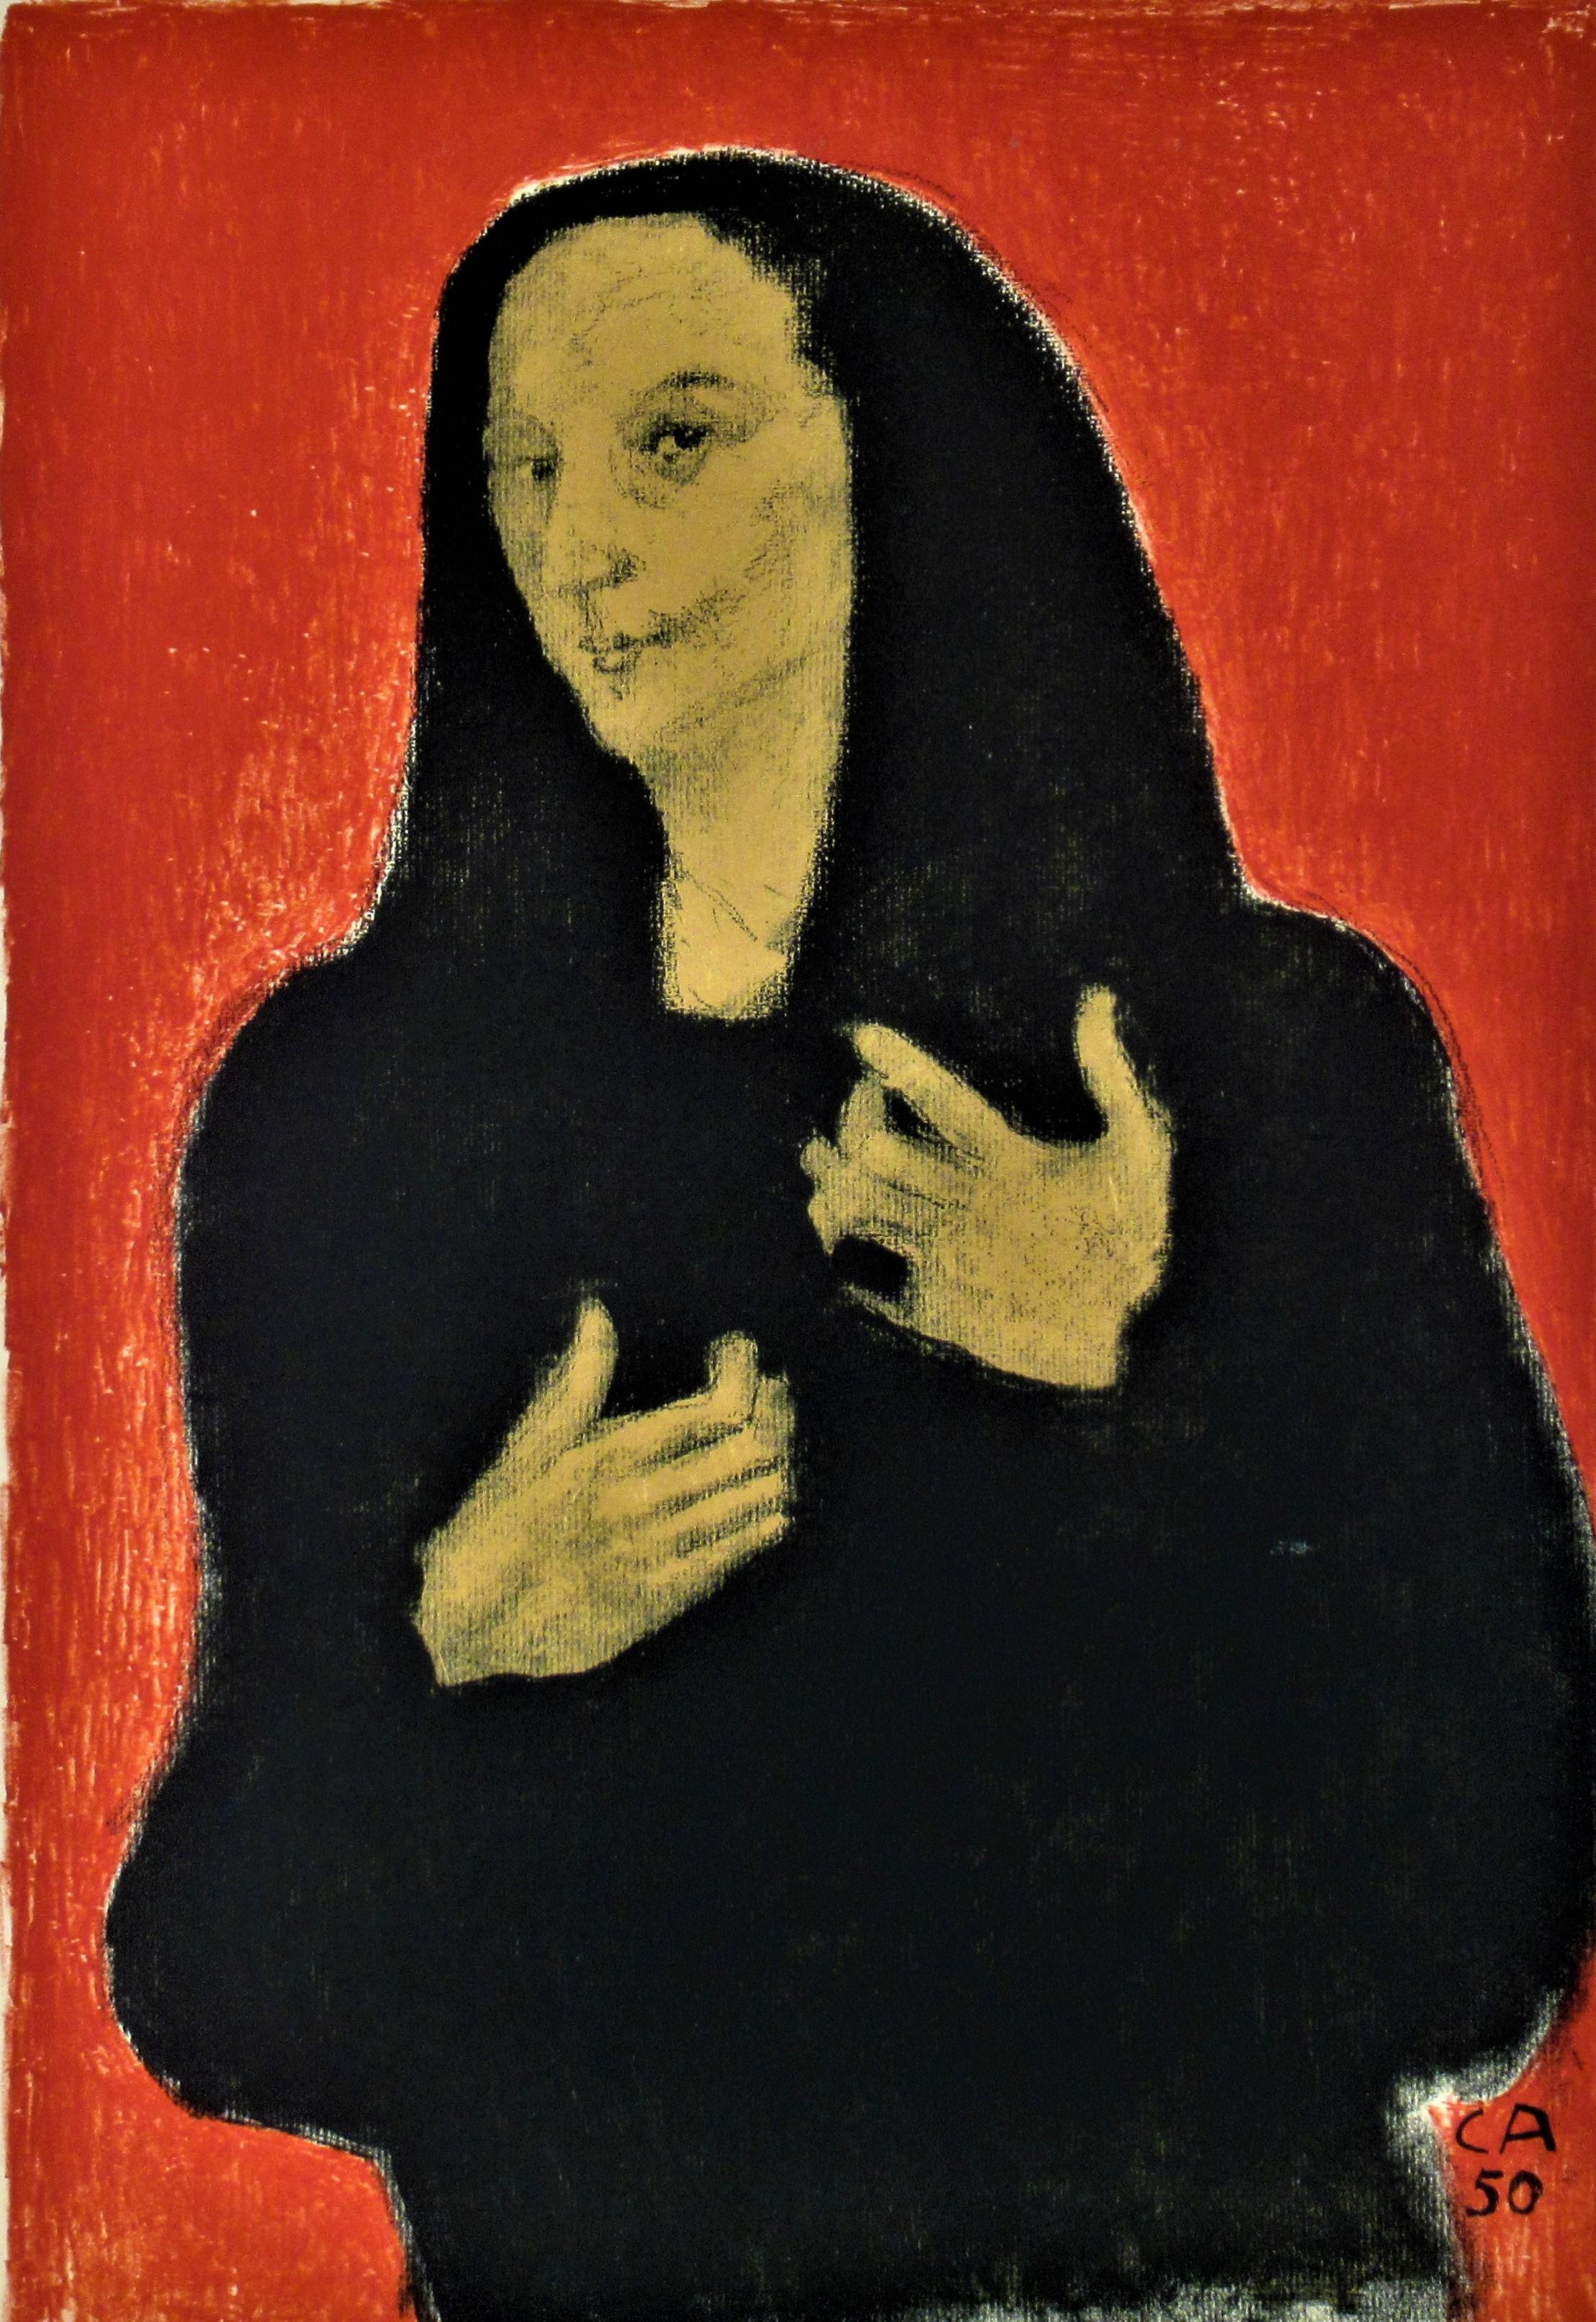 Portrat der Bildhauerin Germaine Richier - Print de Cuno Amiet